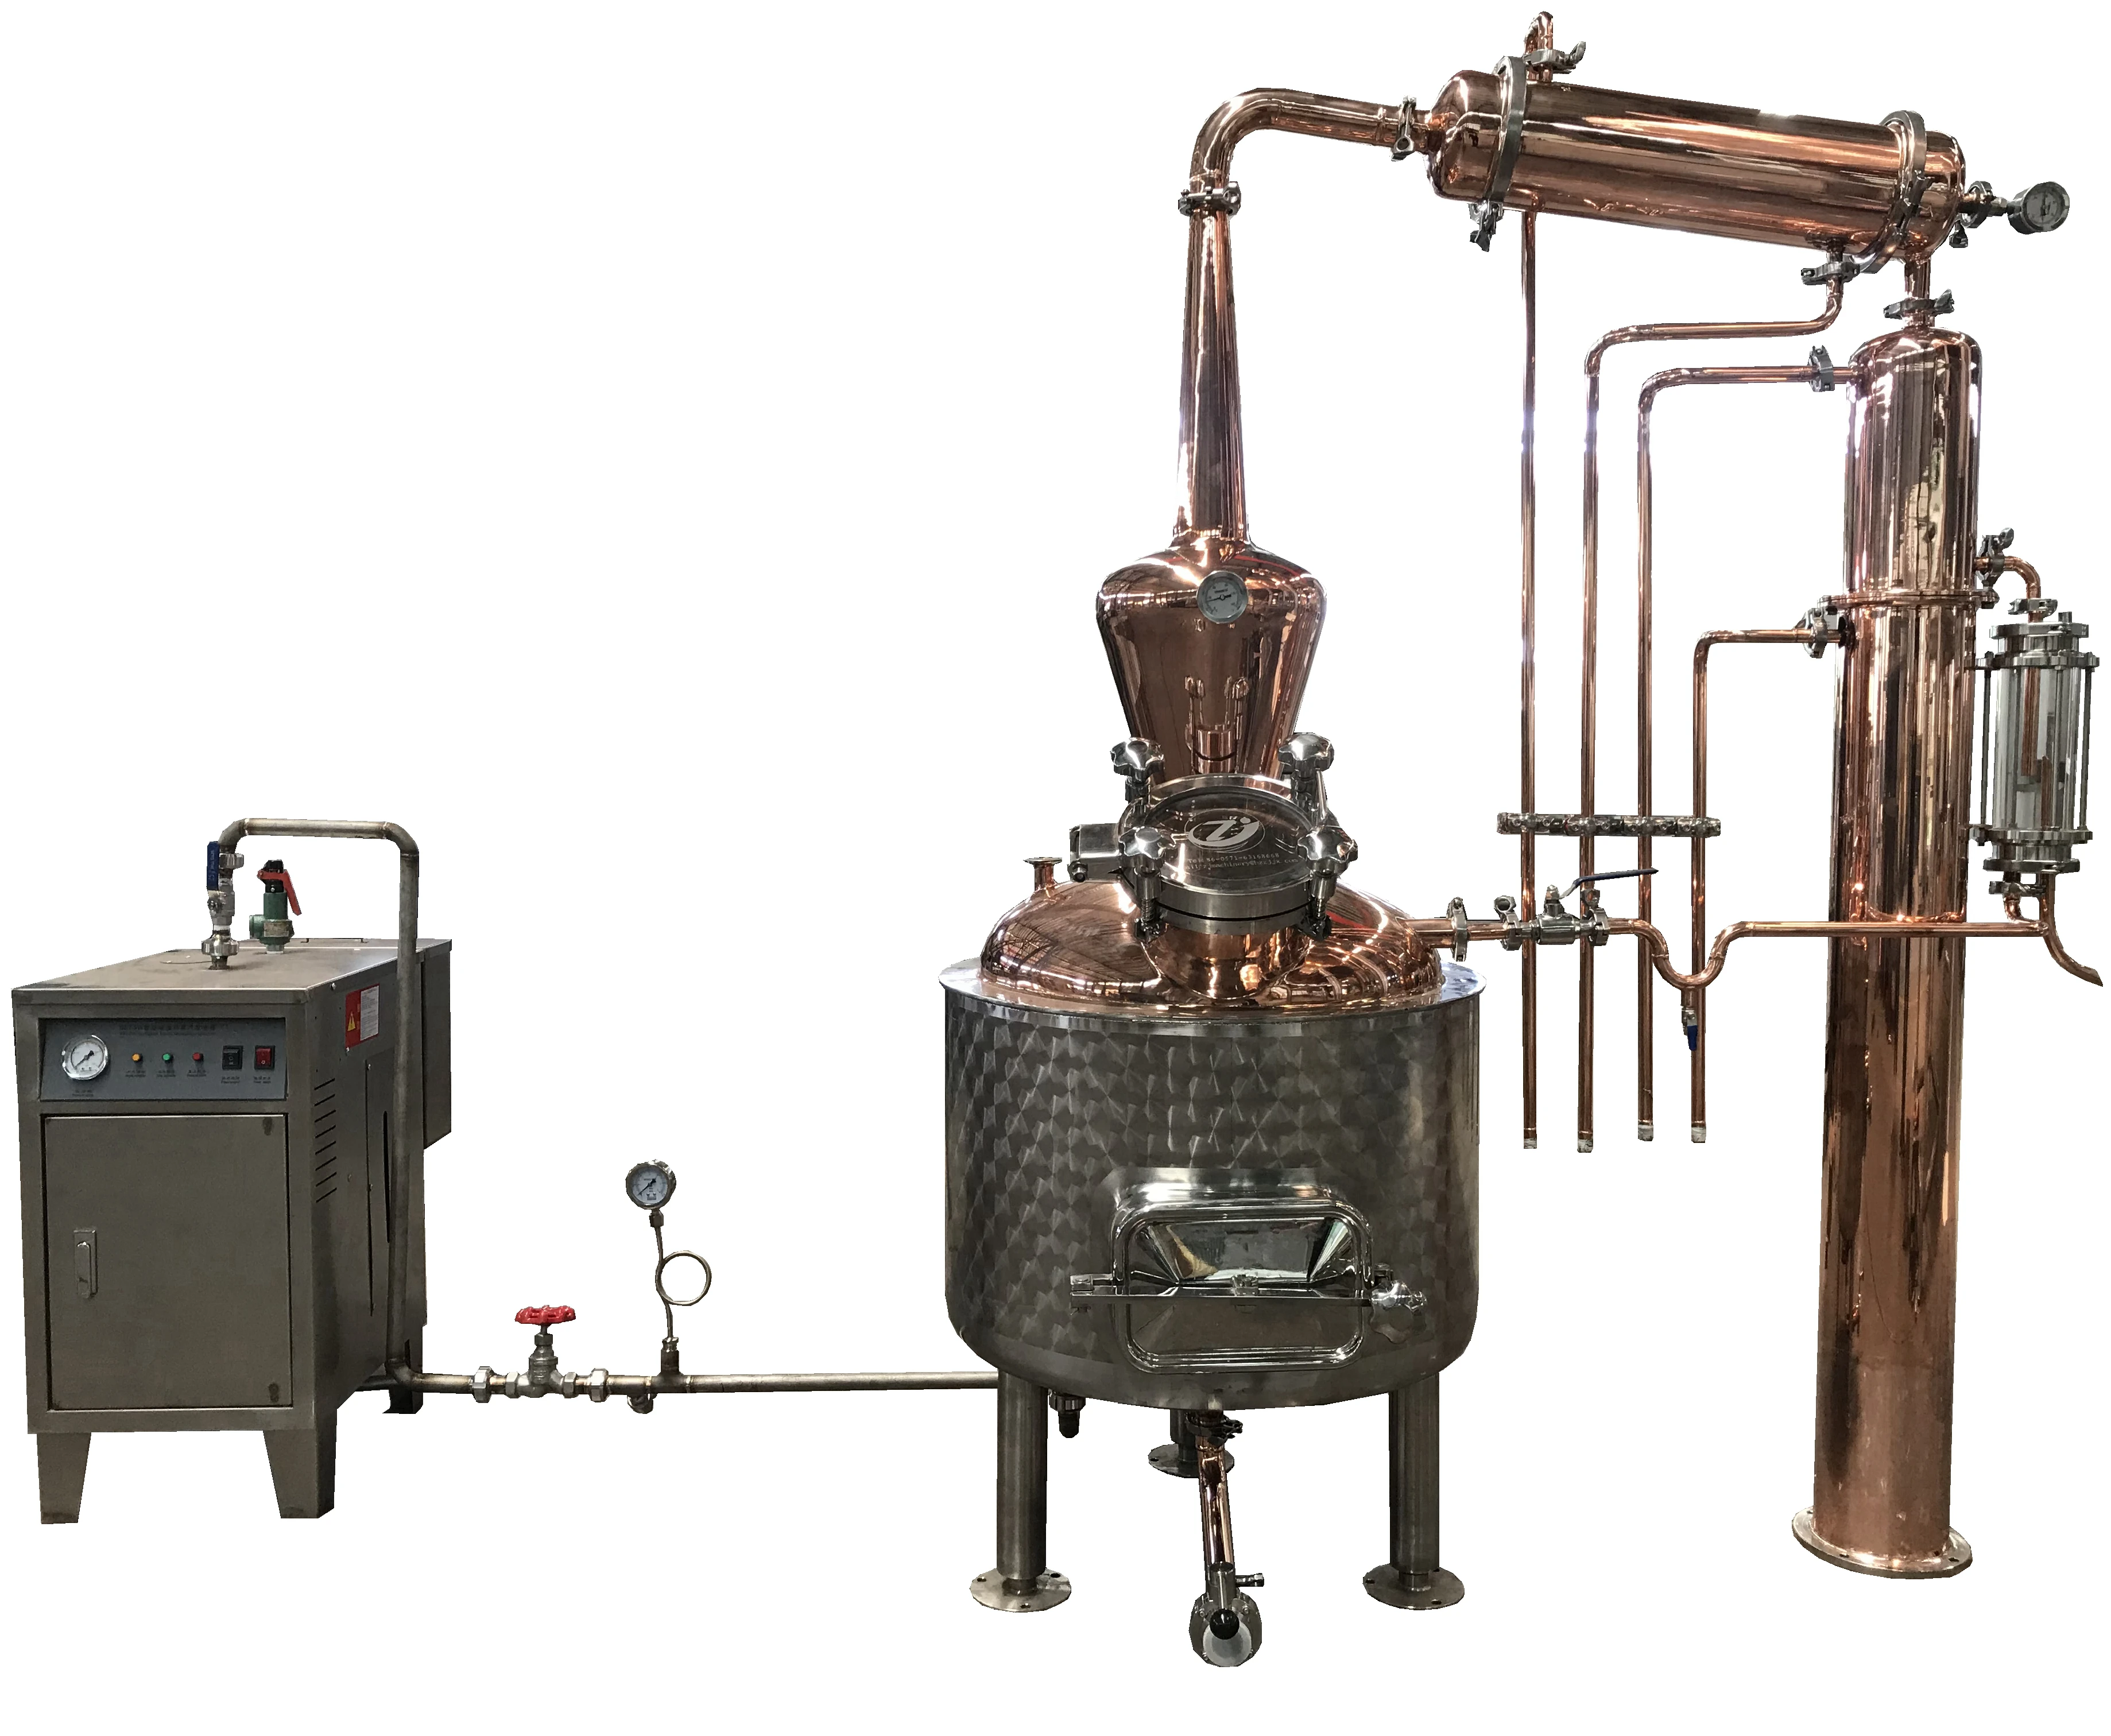 Essential oil steam distillation plant фото 83